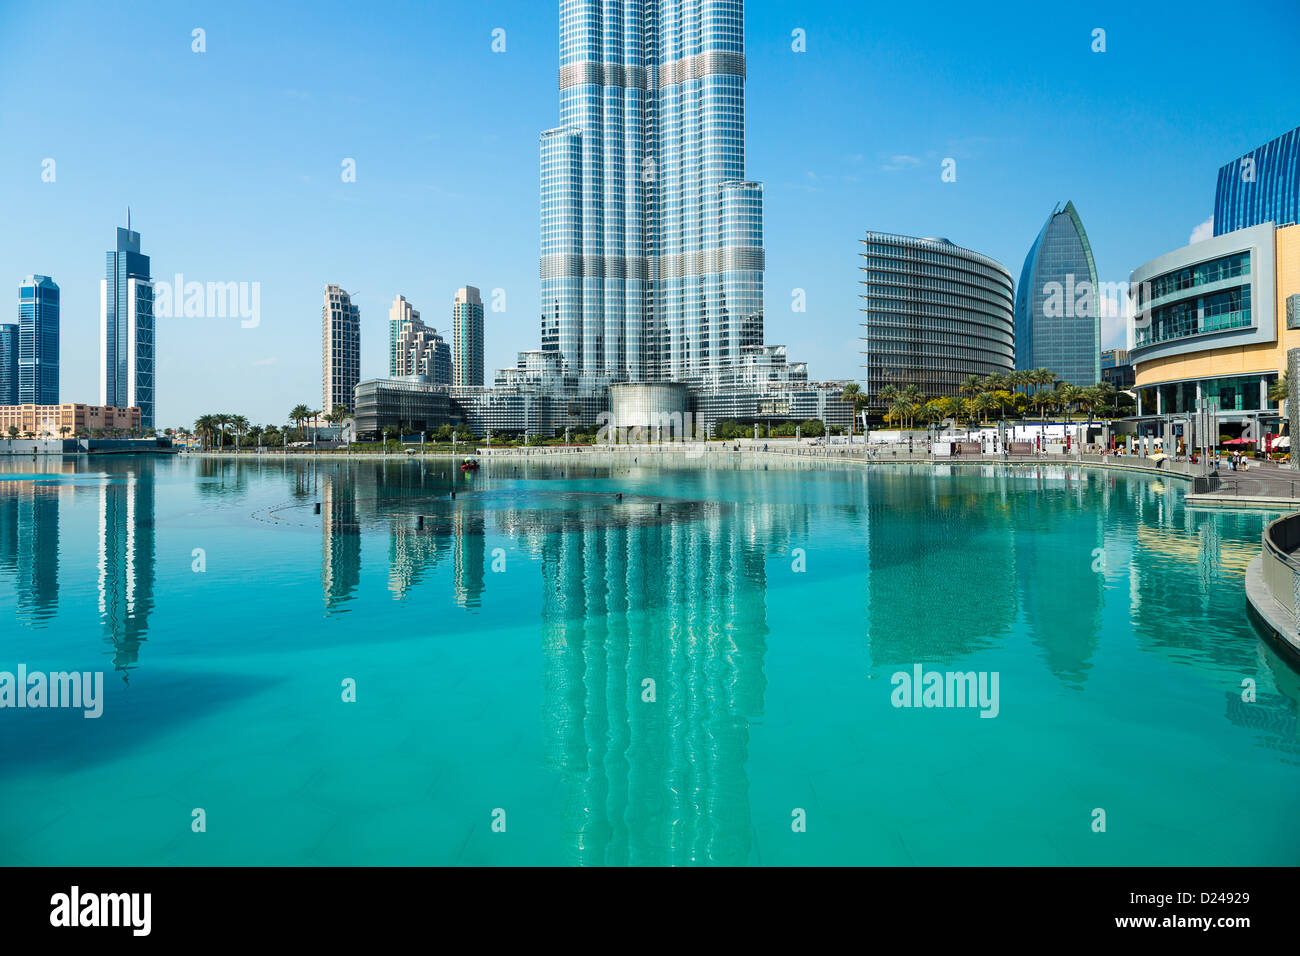 Il Burj Khalifa, edificio più alto del mondo - il Centro di Dubai nel Business Bay area di Dubai, Emirati arabi uniti Foto Stock